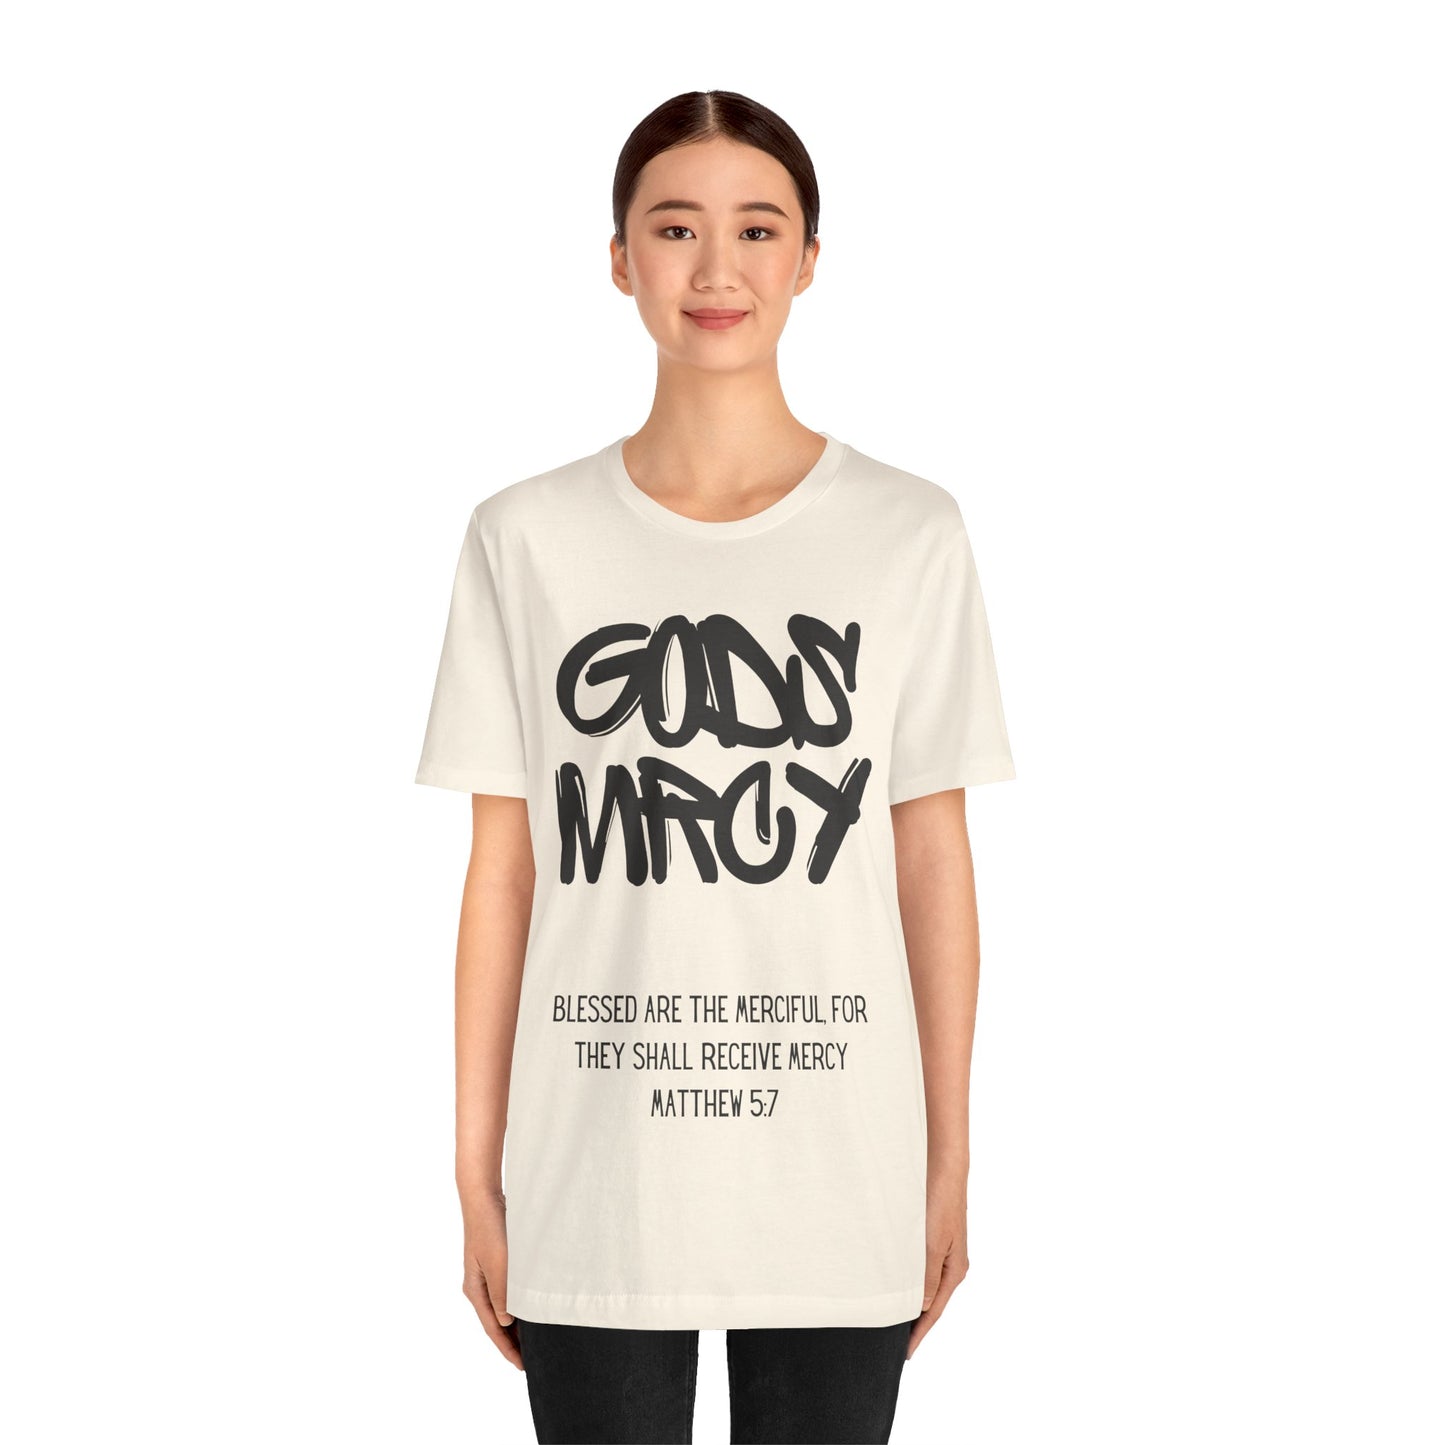 GODS MRCY T-Shirt